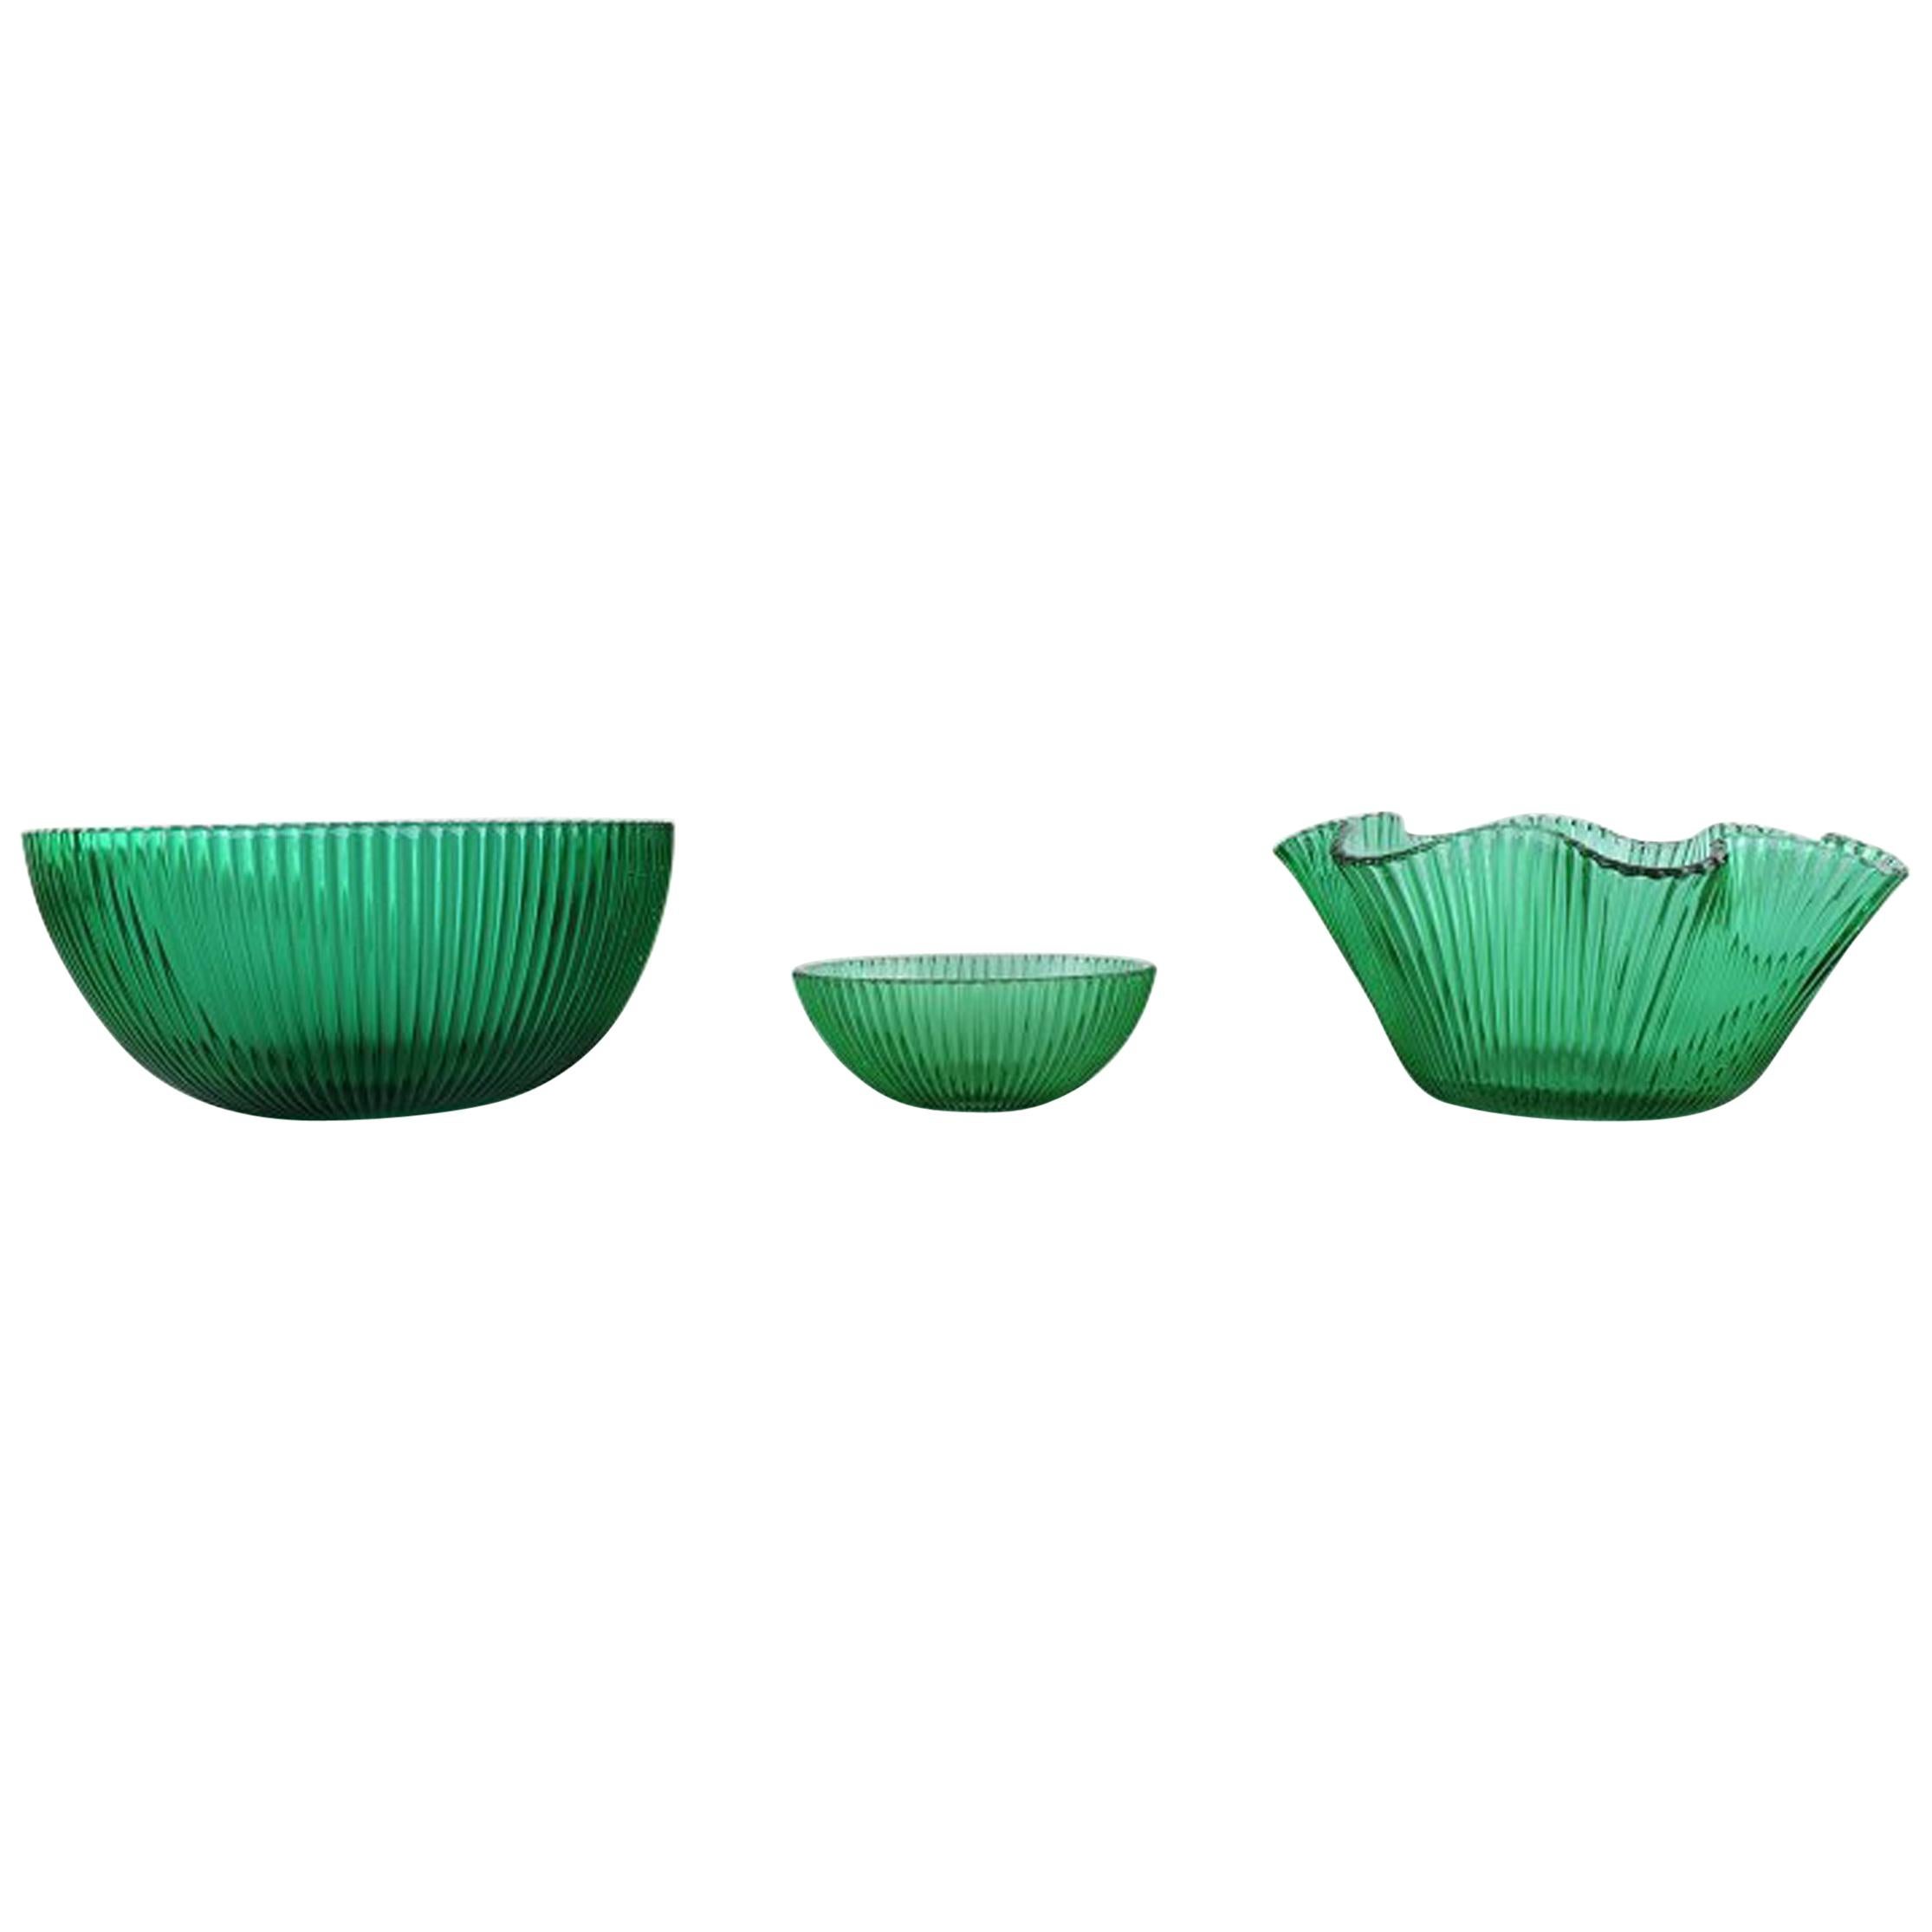 Arthur Percy für Nybro, Schweden, 3 Schalen aus grünem Kunstglas, geriffeltes Design